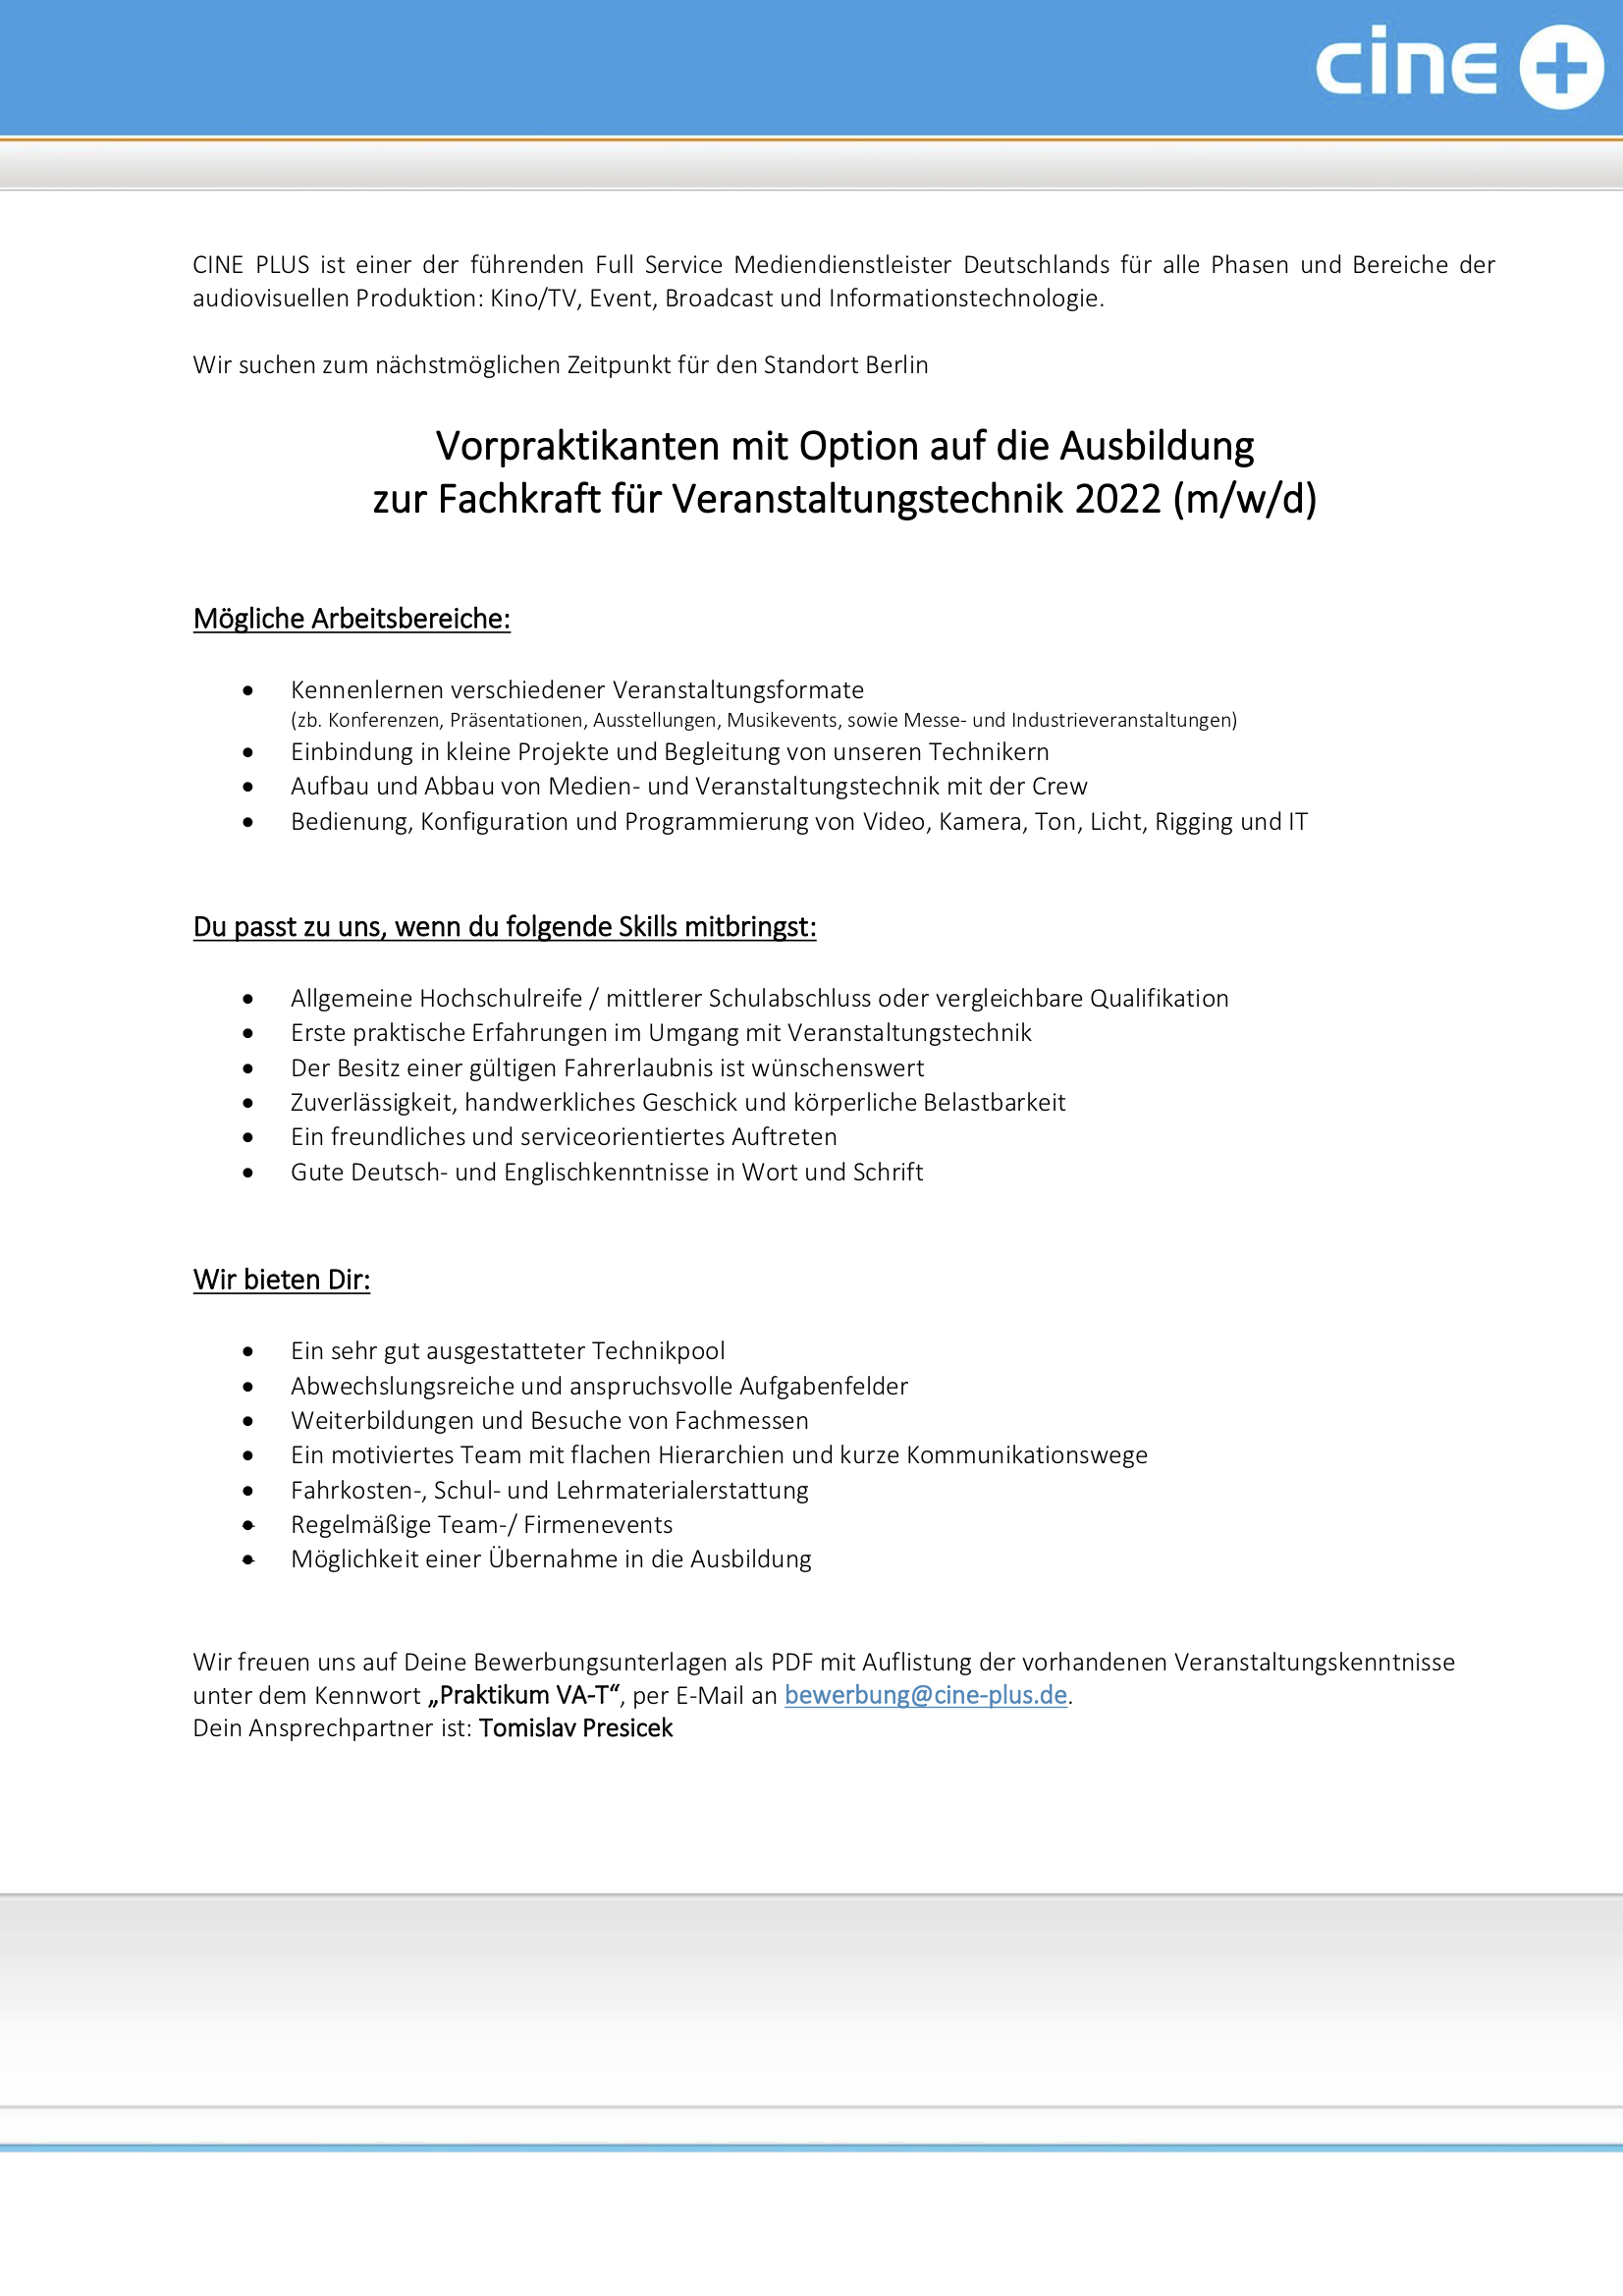 Vorpraktikanten, Opt. auf Ausb. Fachkraft für Veranstaltungstechnik (m/w/d)